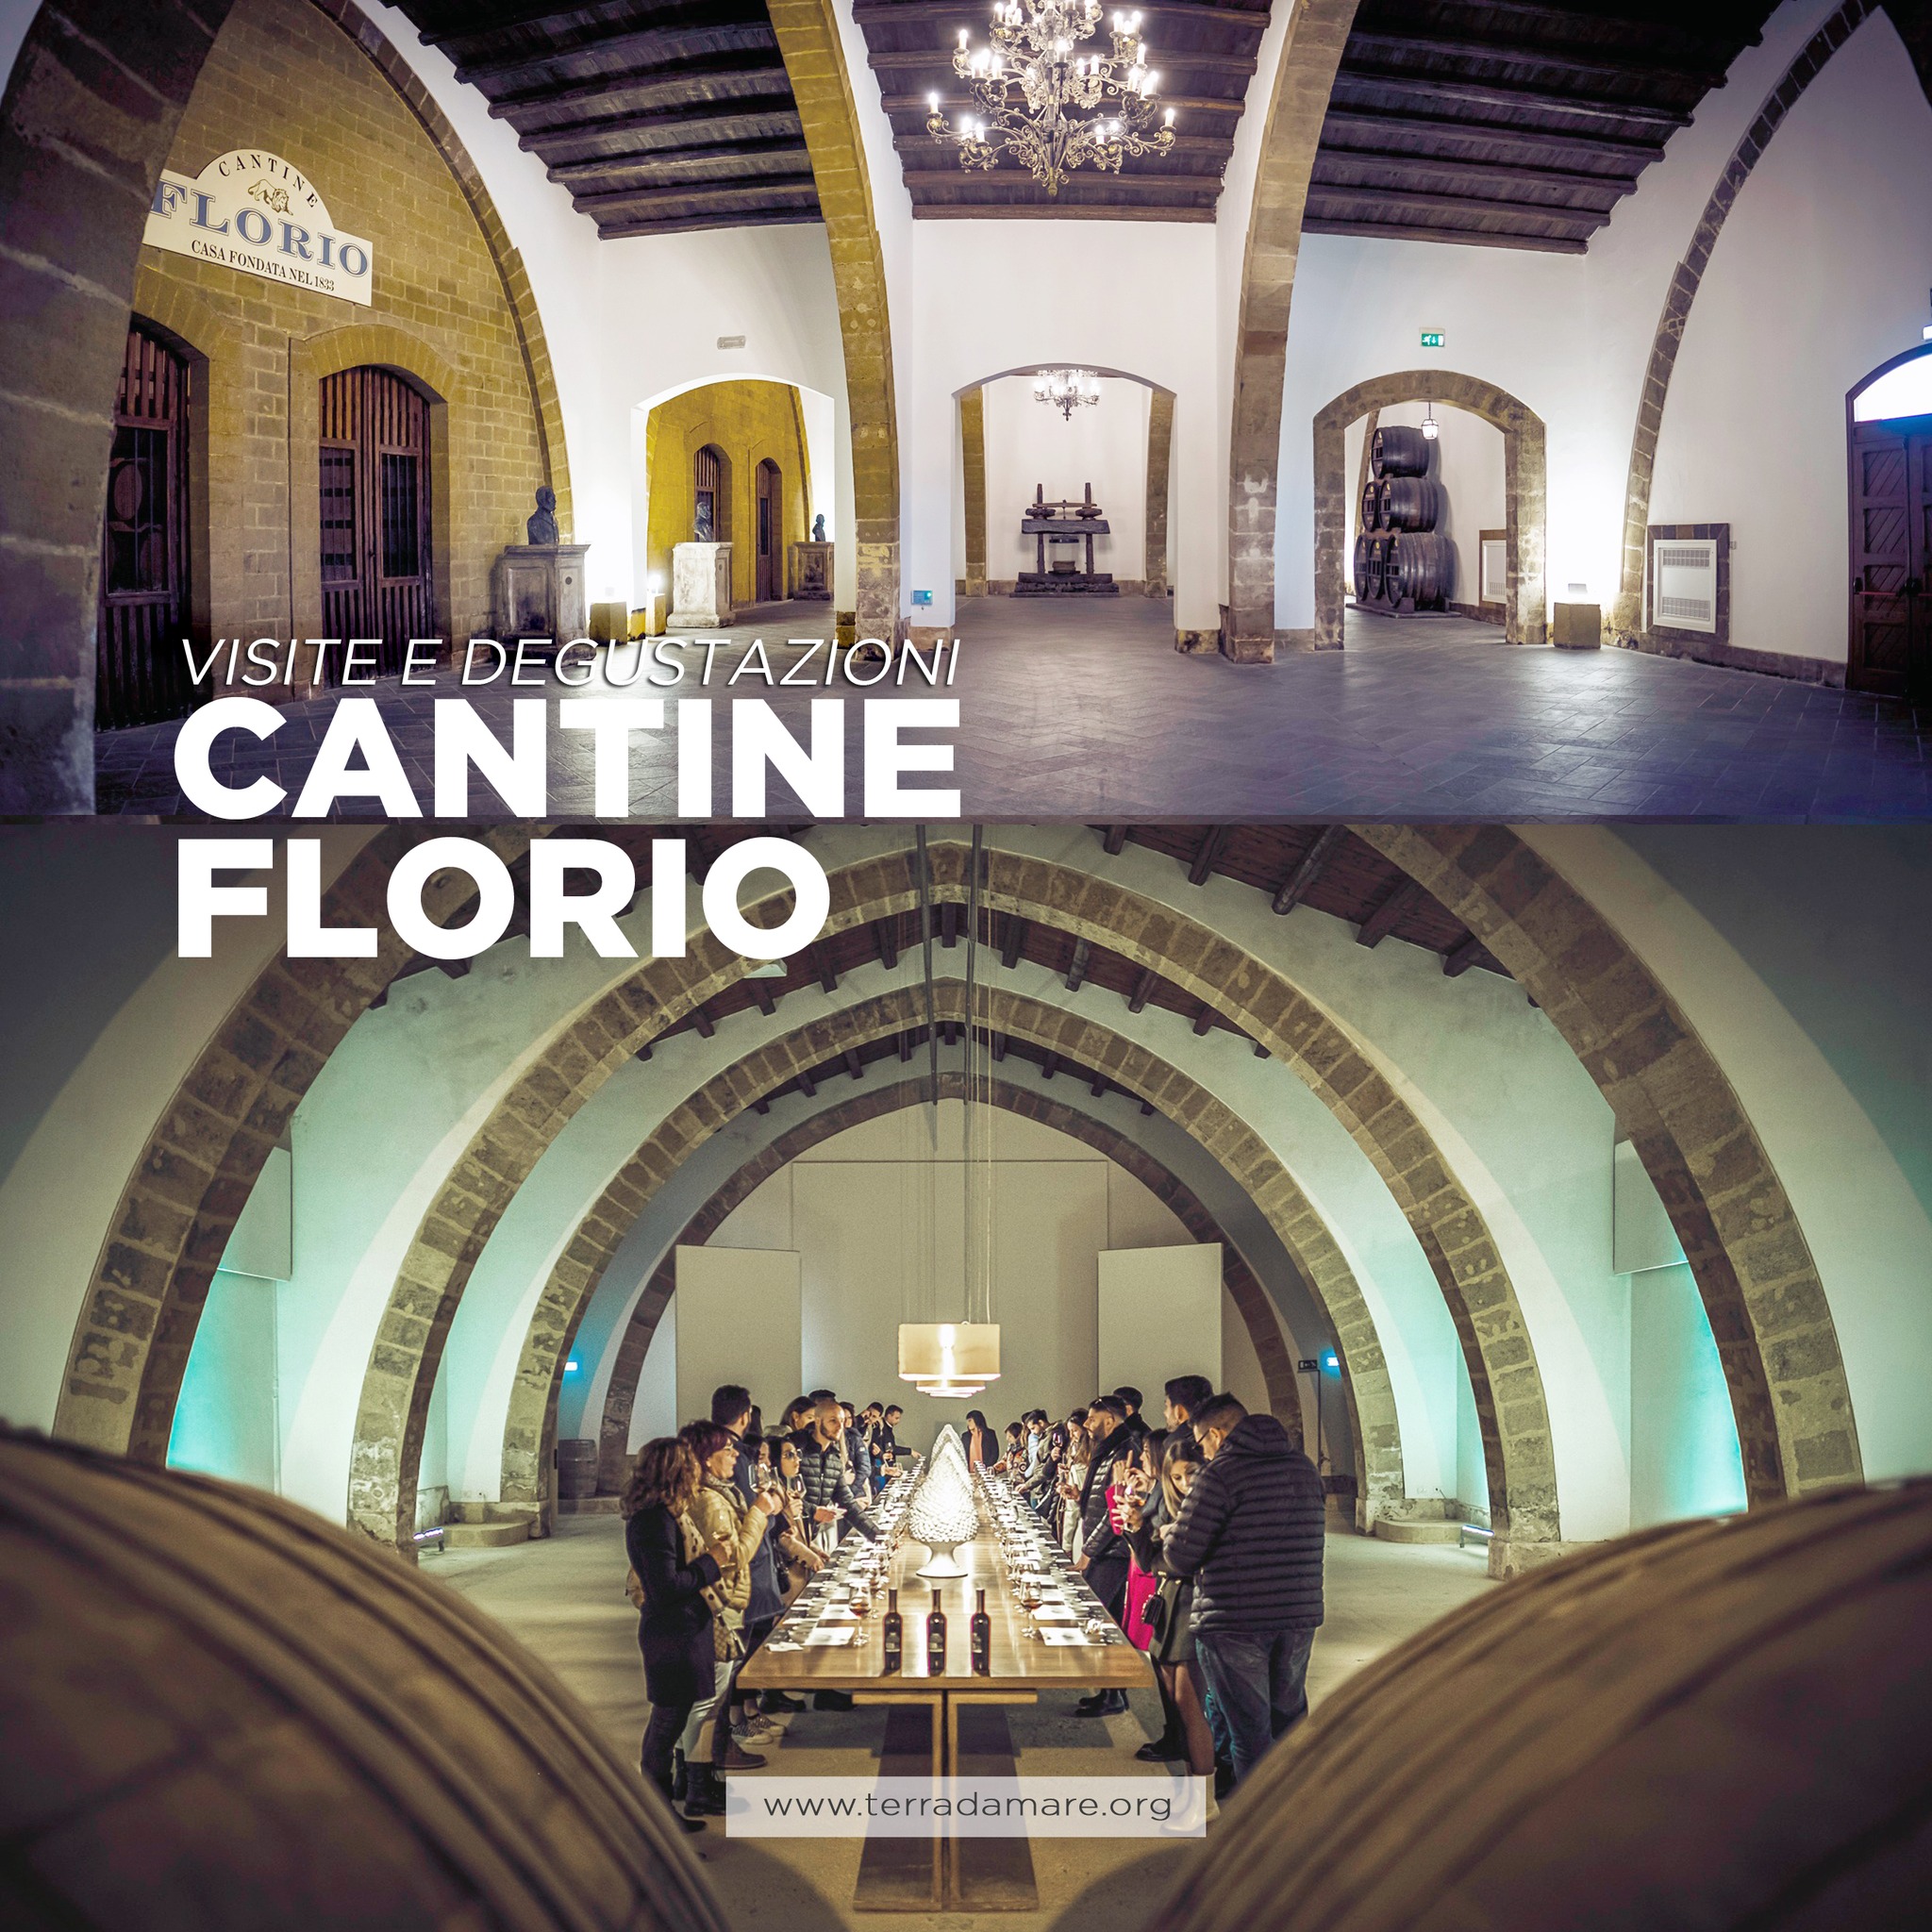 Cantine Florio - Visite e degustazioni domenicali